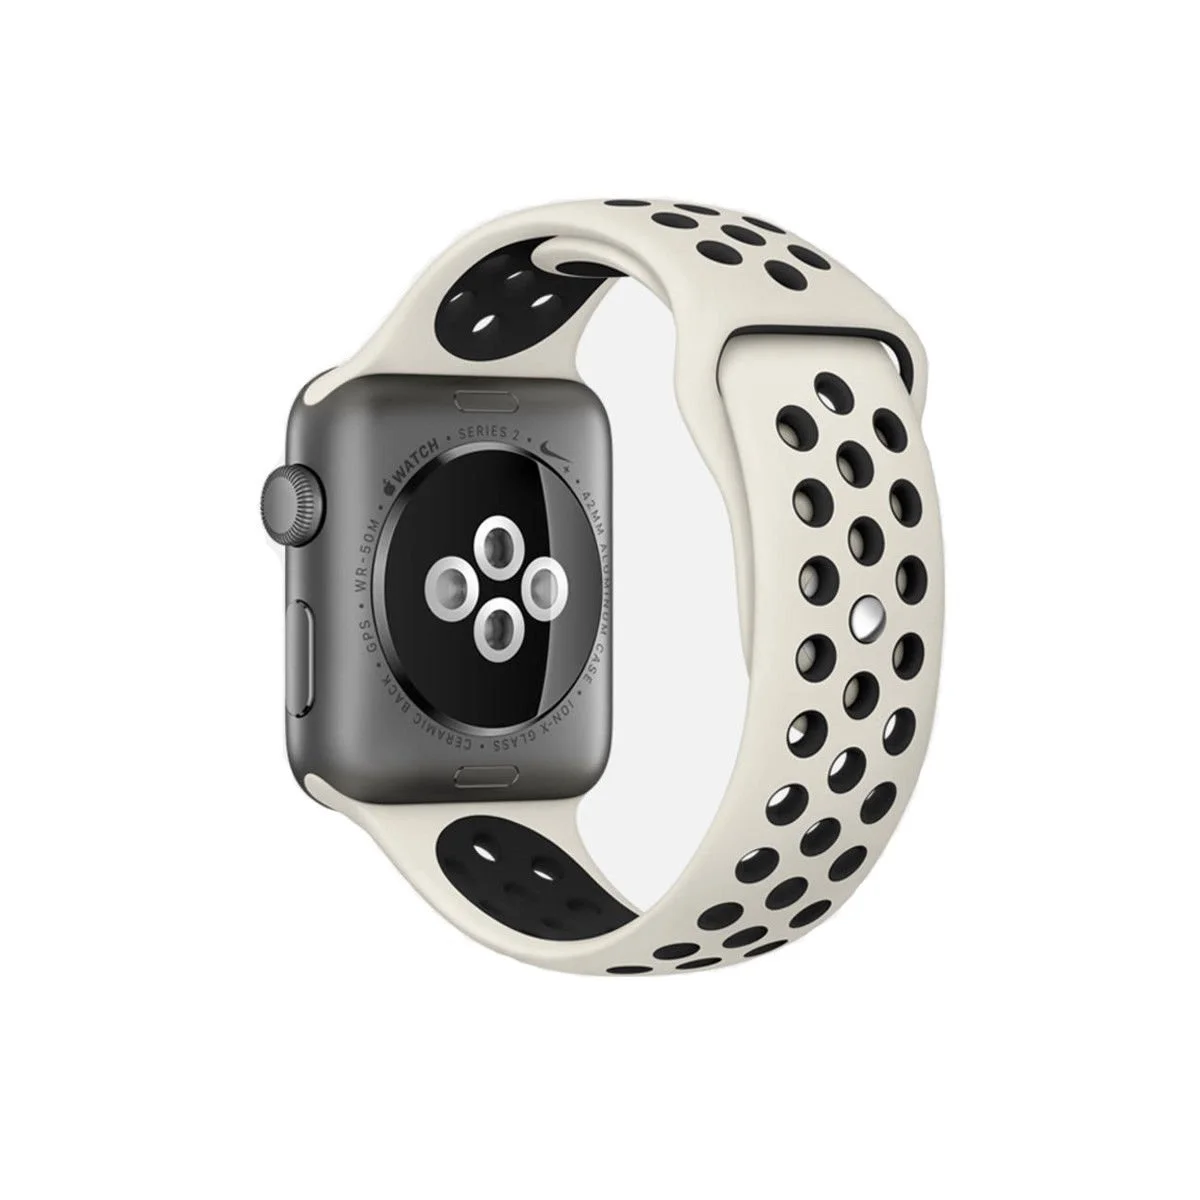 Řemínek iMore SPORT pro Apple Watch Series 4/5/6/SE (40mm) - Anticky bílý/Černý